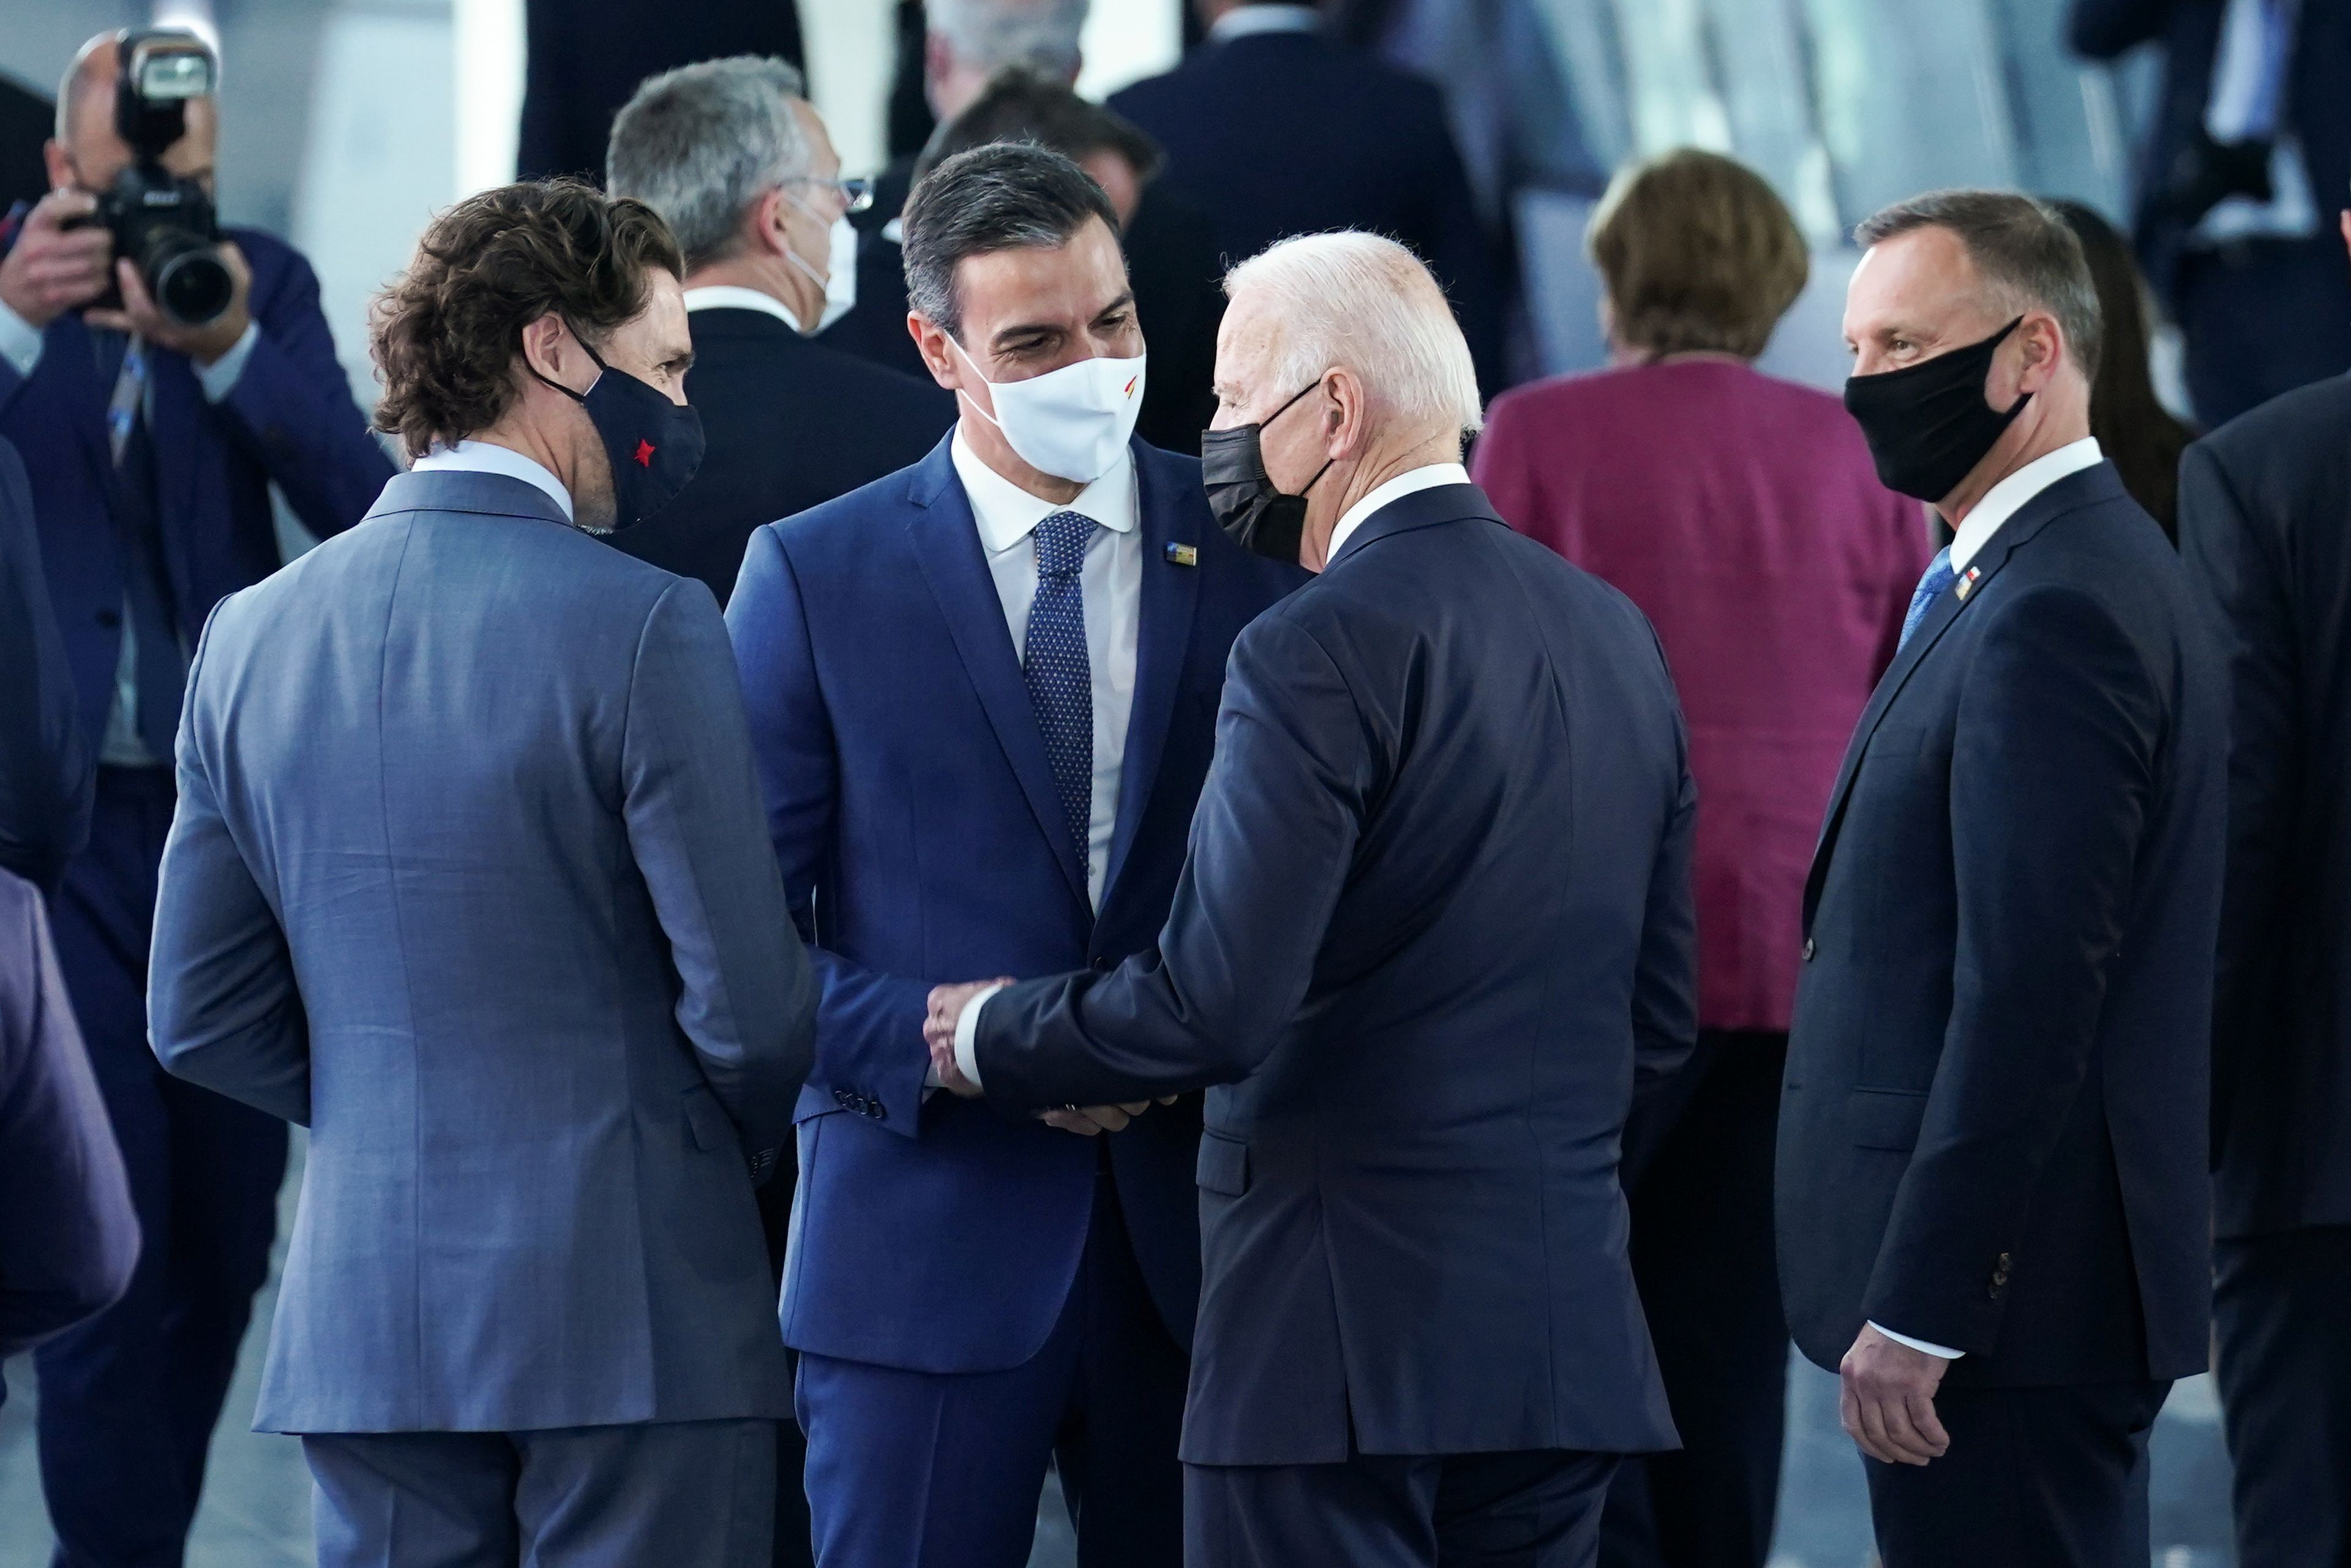 Pedro Sánchez, presidente del Gobierno, charla con Joe Biden y Justin Trudeau durante su breve encuentro en un pasillo durante el encuentro de la OTAN en Bruselas.